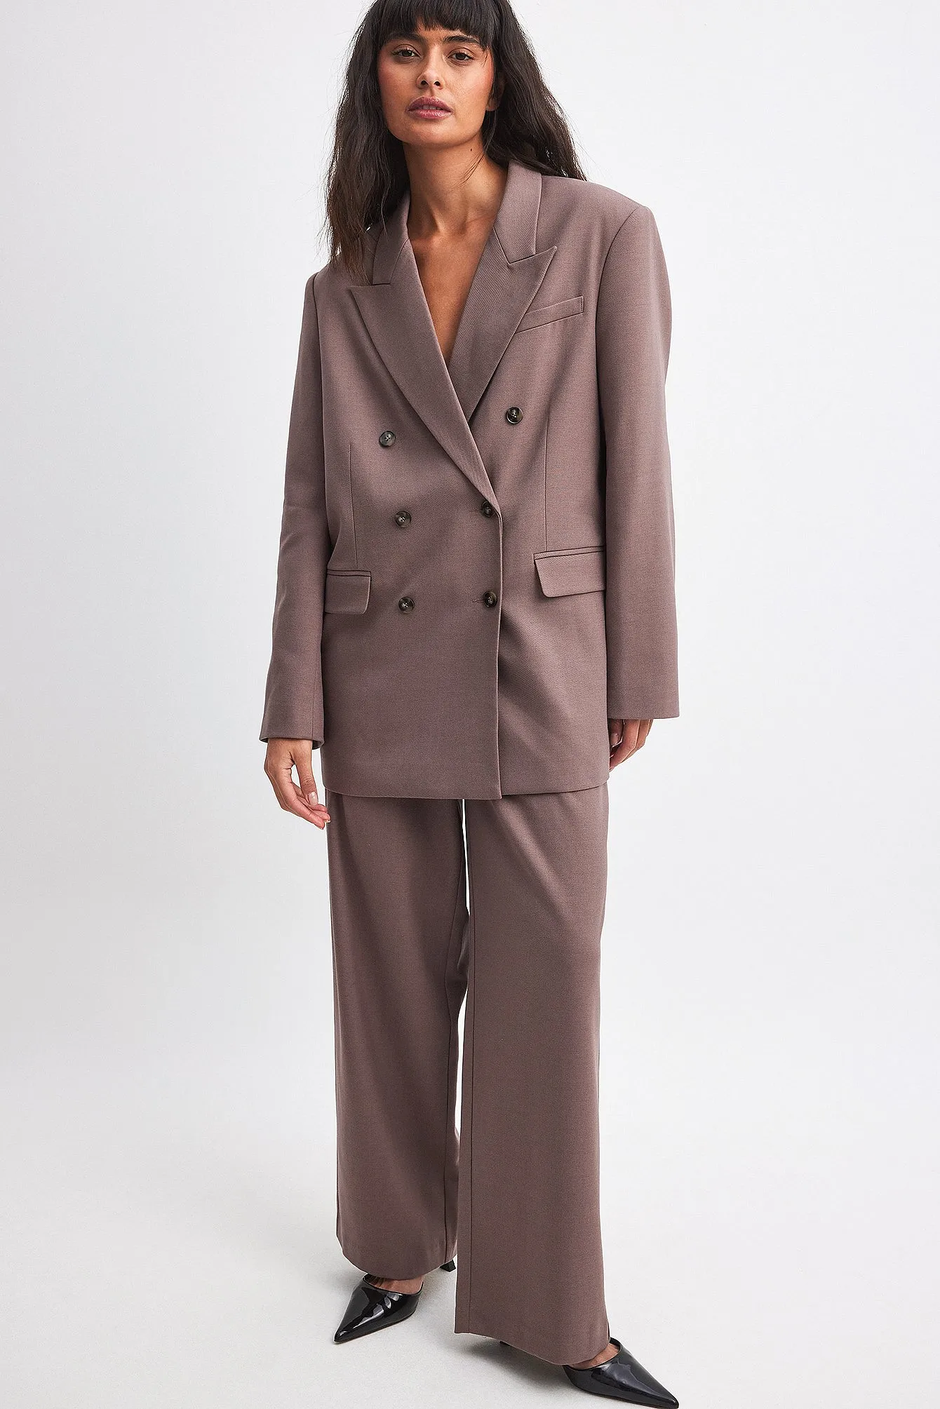 Foto: NA-KD, prljavo ružičasta boja odijela (sako 56,97 eura i hlače 38,97 eura) | Autor: NA-KD